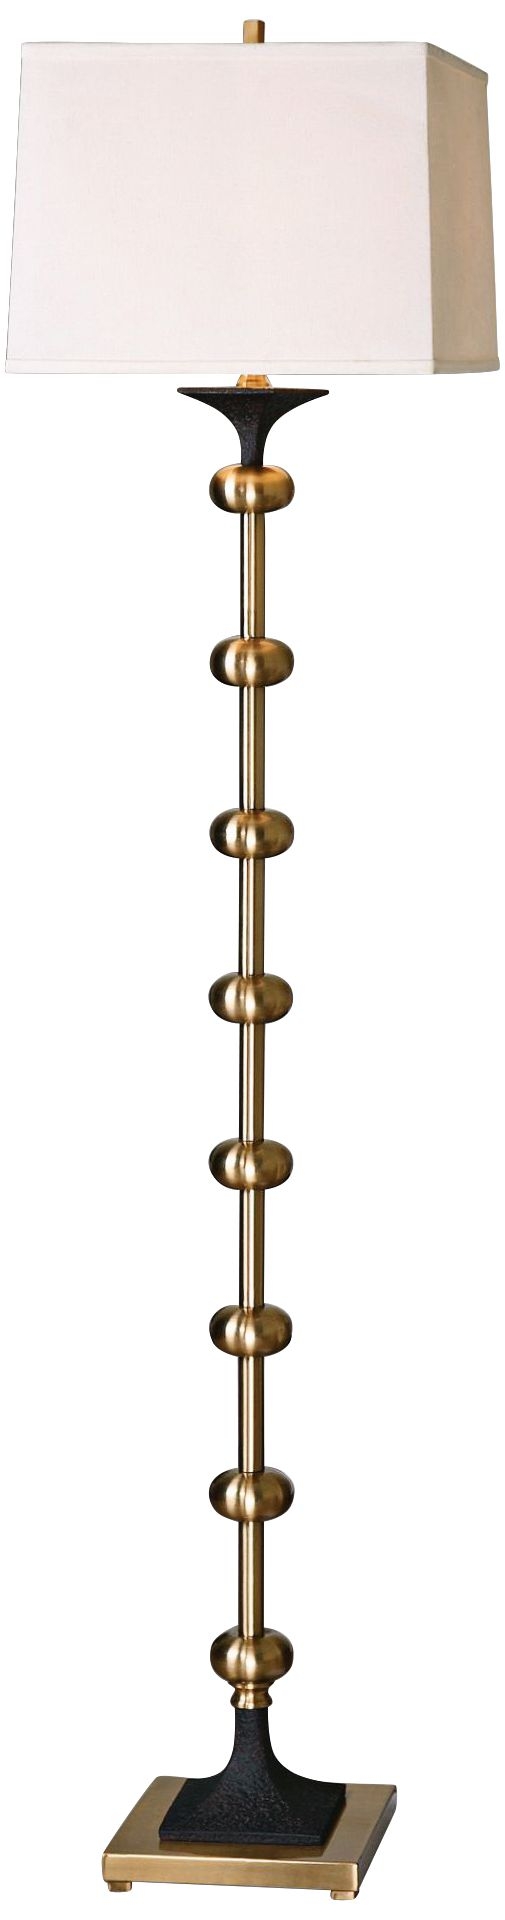 Uttermost Santona Brushed Brass Floor Lamp - Image 0